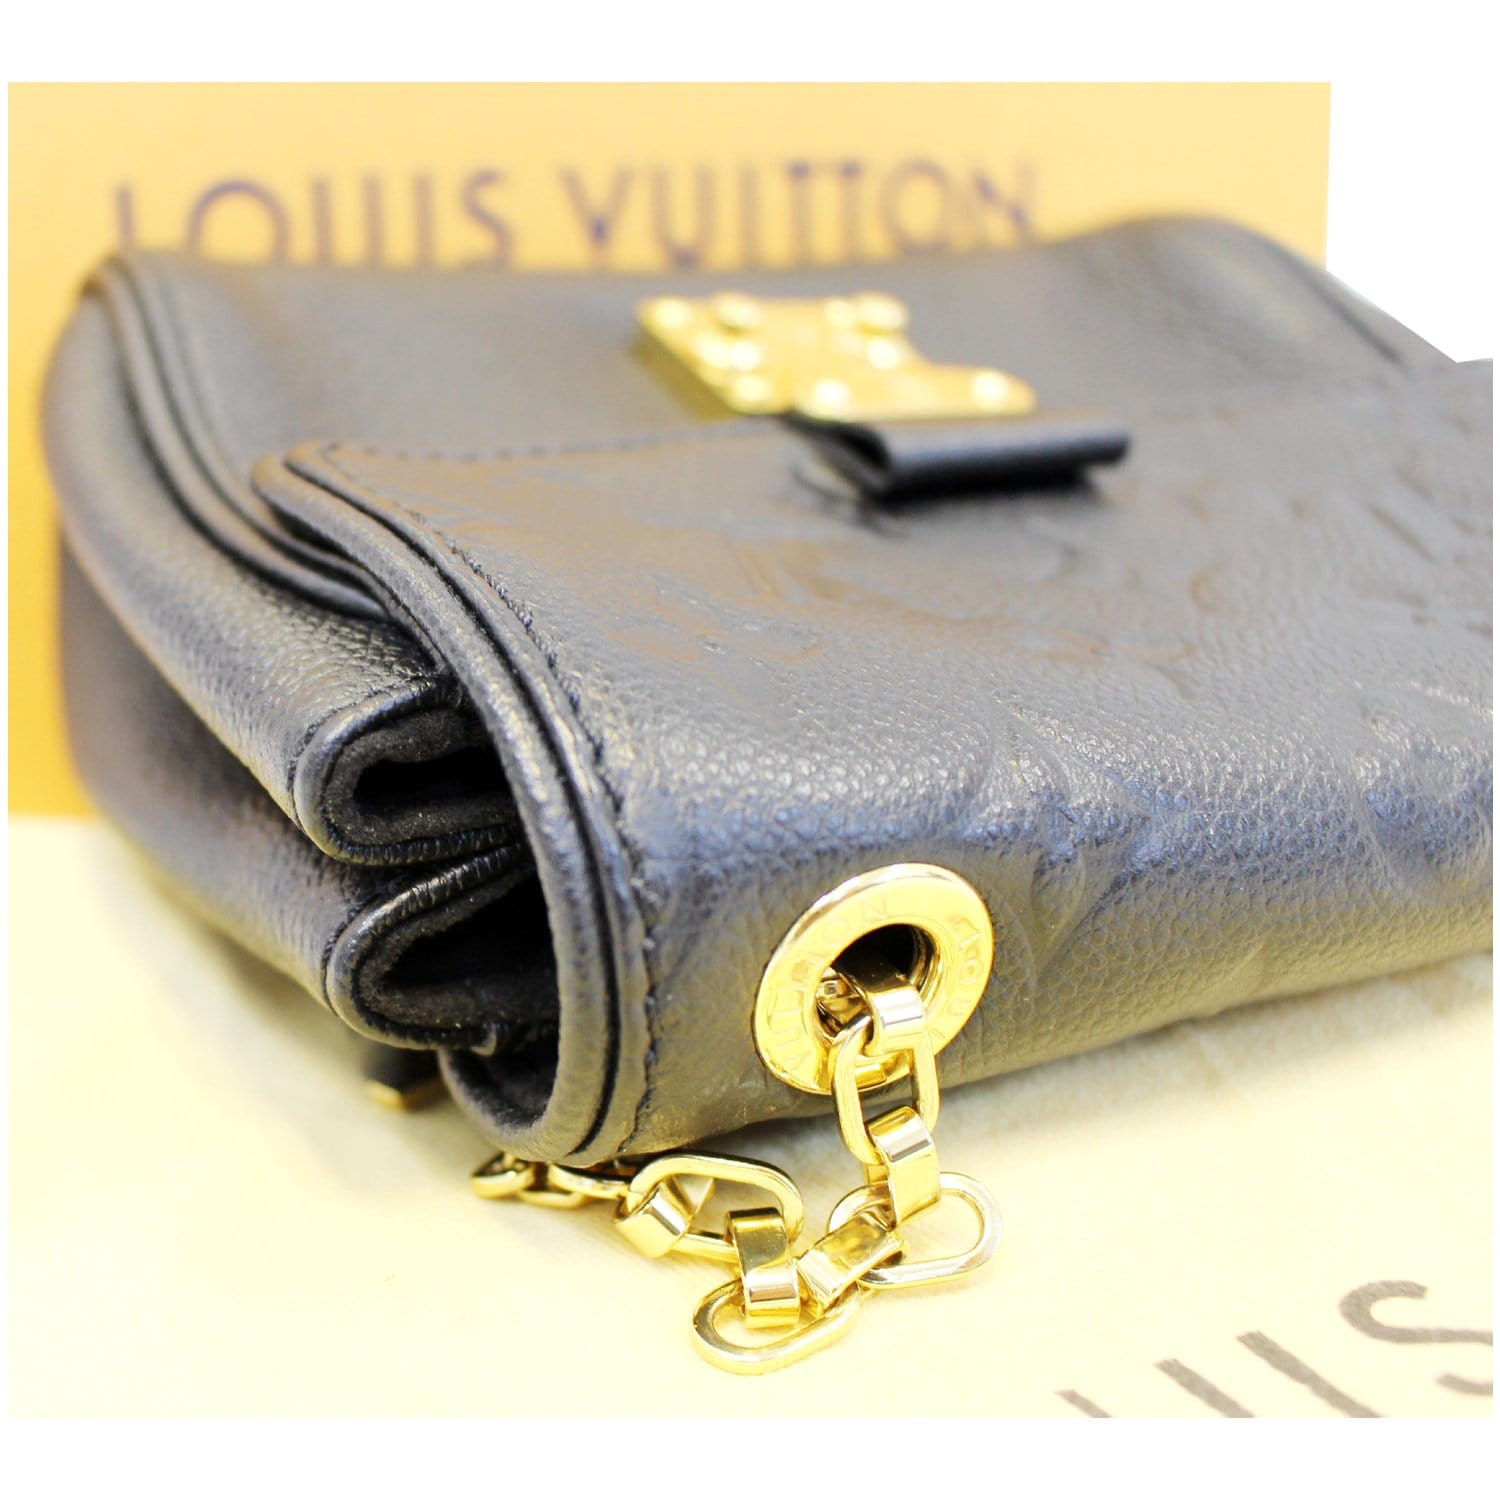 Louis Vuitton Saint-Germain Vintage Leather Handbag